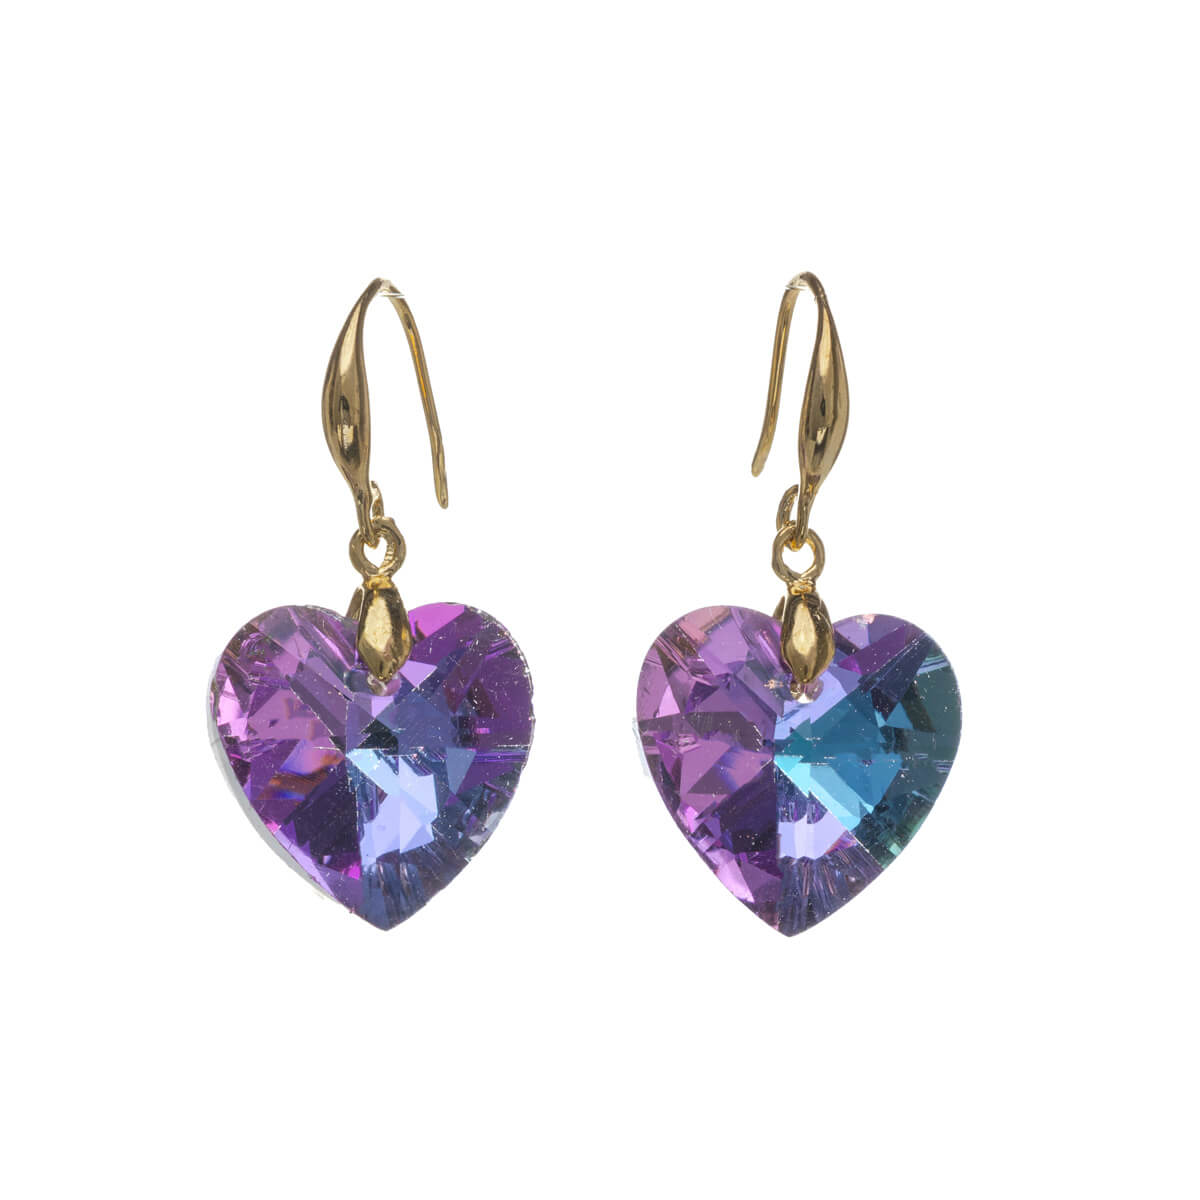 Hanging glass heart earrings